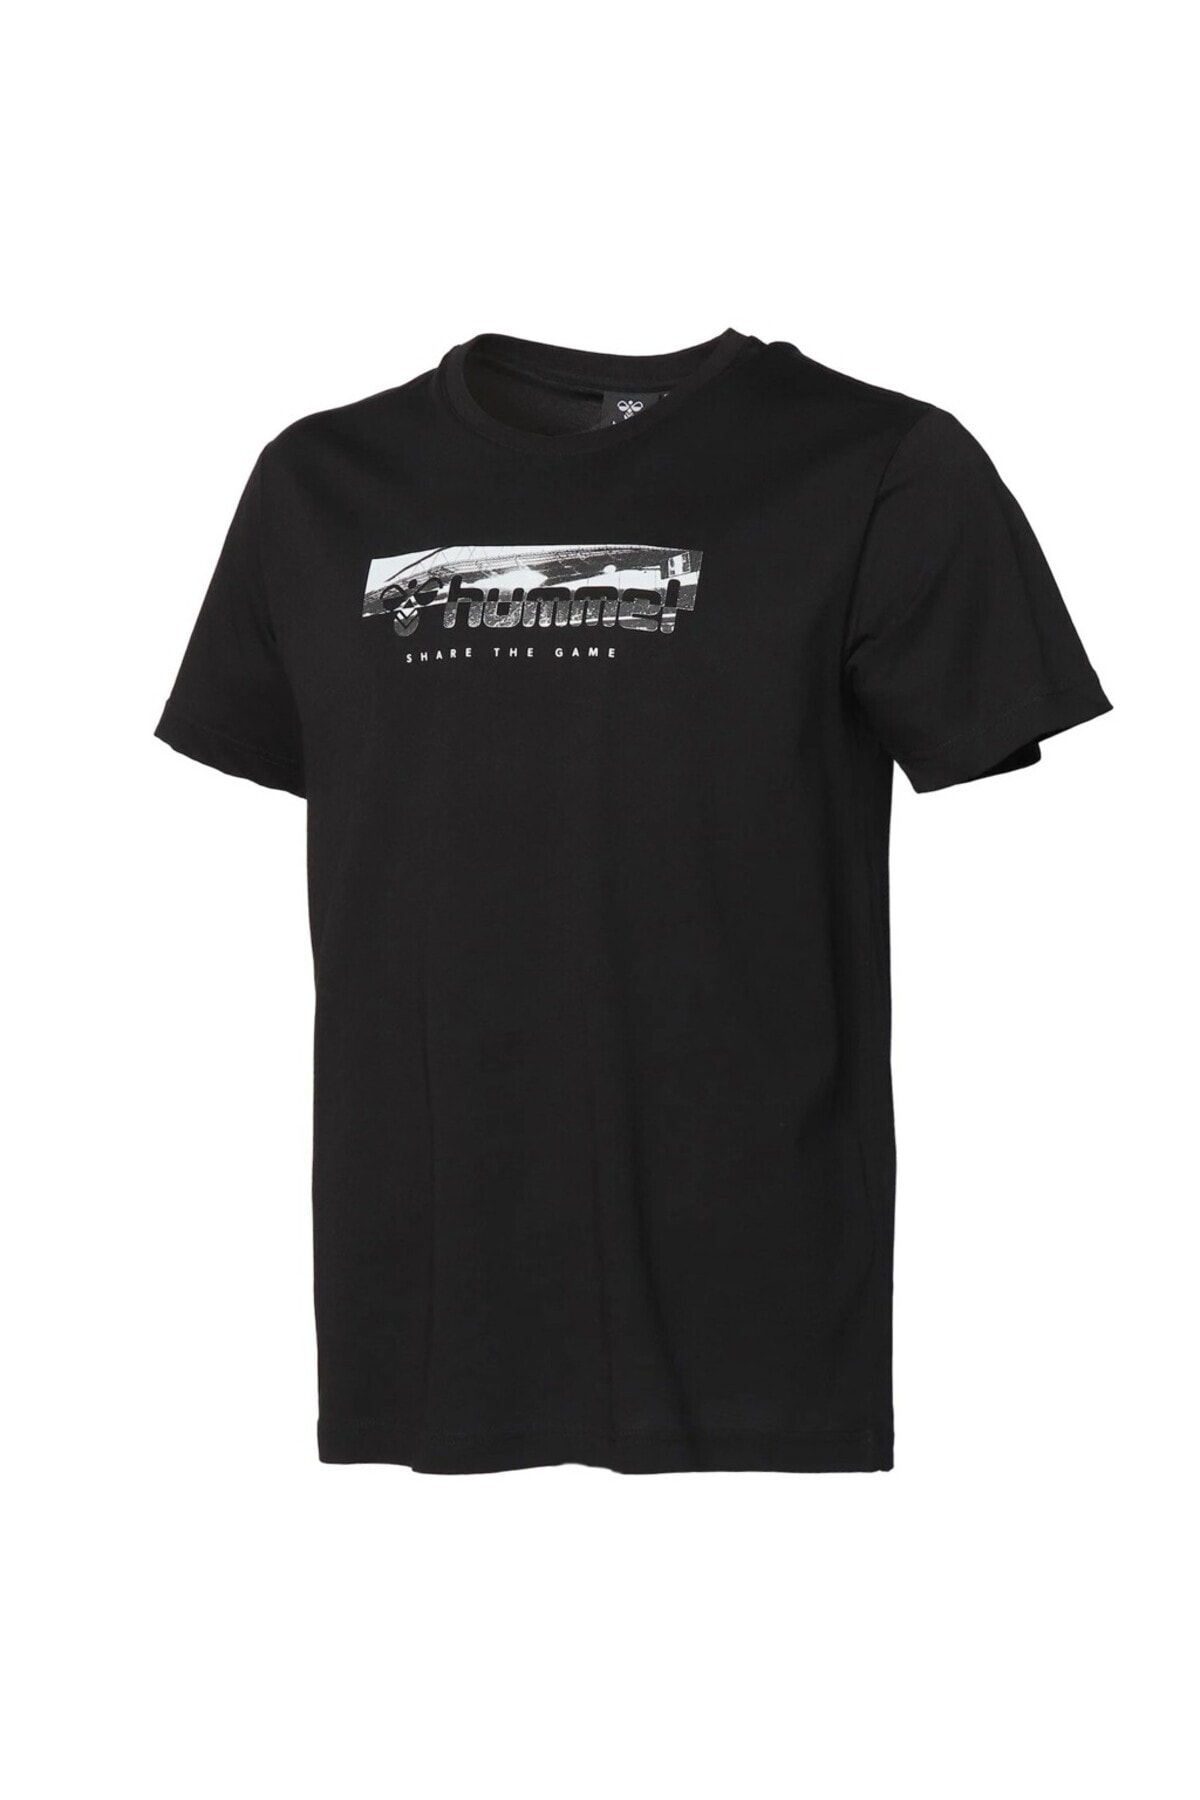 HUMMEL تی شرت مردانه یقه خدمه مشکی برایان